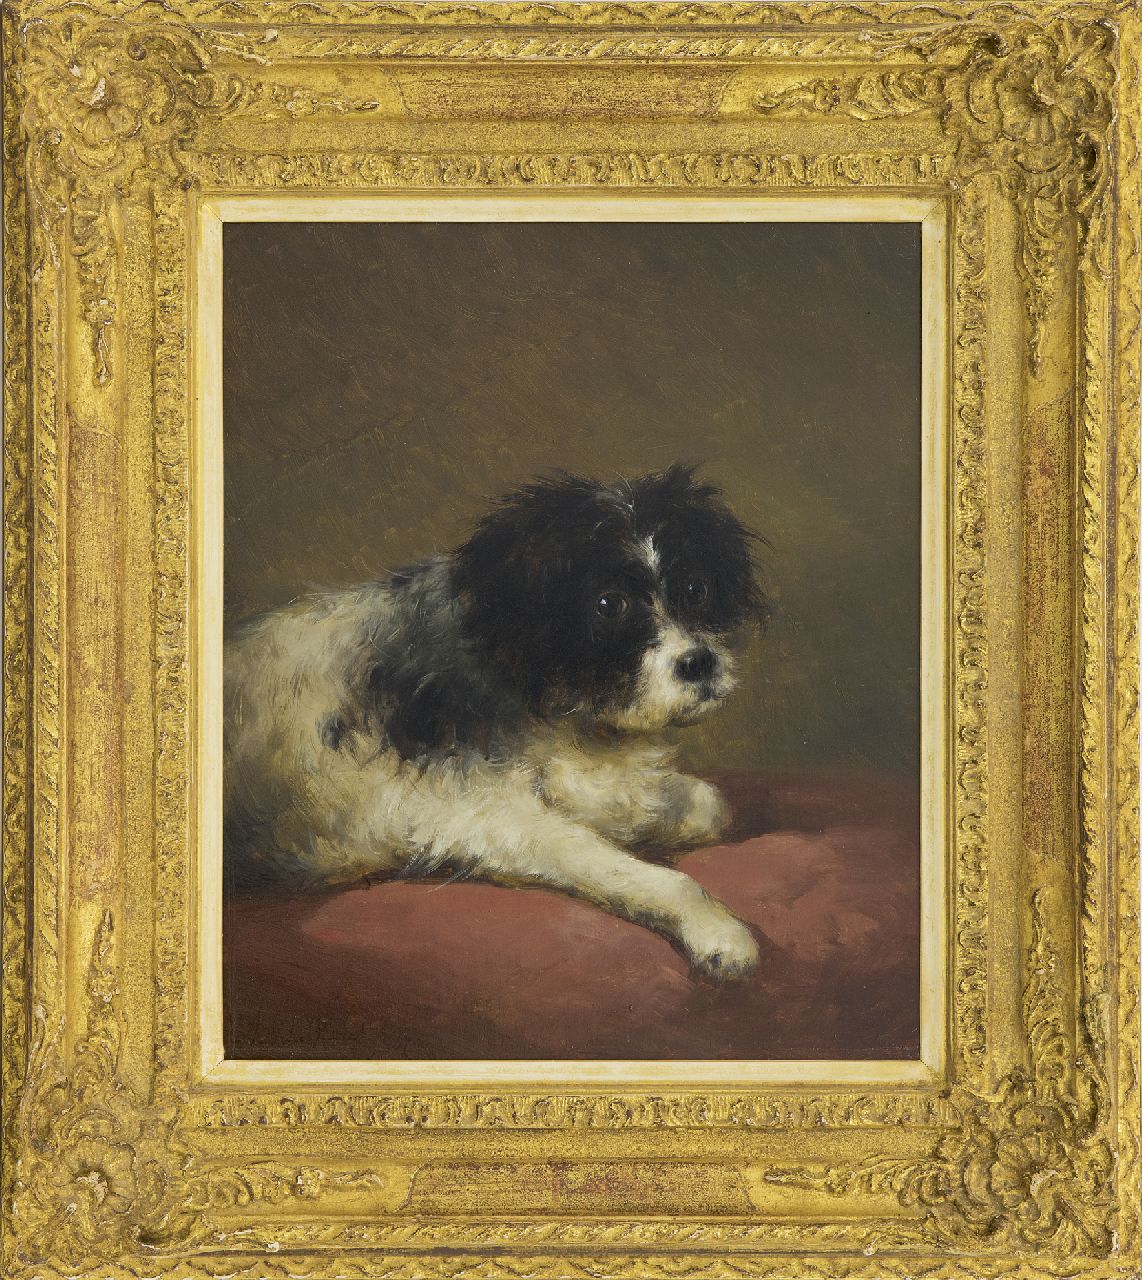 Schelfhout A.  | Andreas Schelfhout, Portret van een hondje liggend op een rood kussen, olieverf op paneel 32,1 x 27,3 cm, gesigneerd linksonder en gedateerd '47